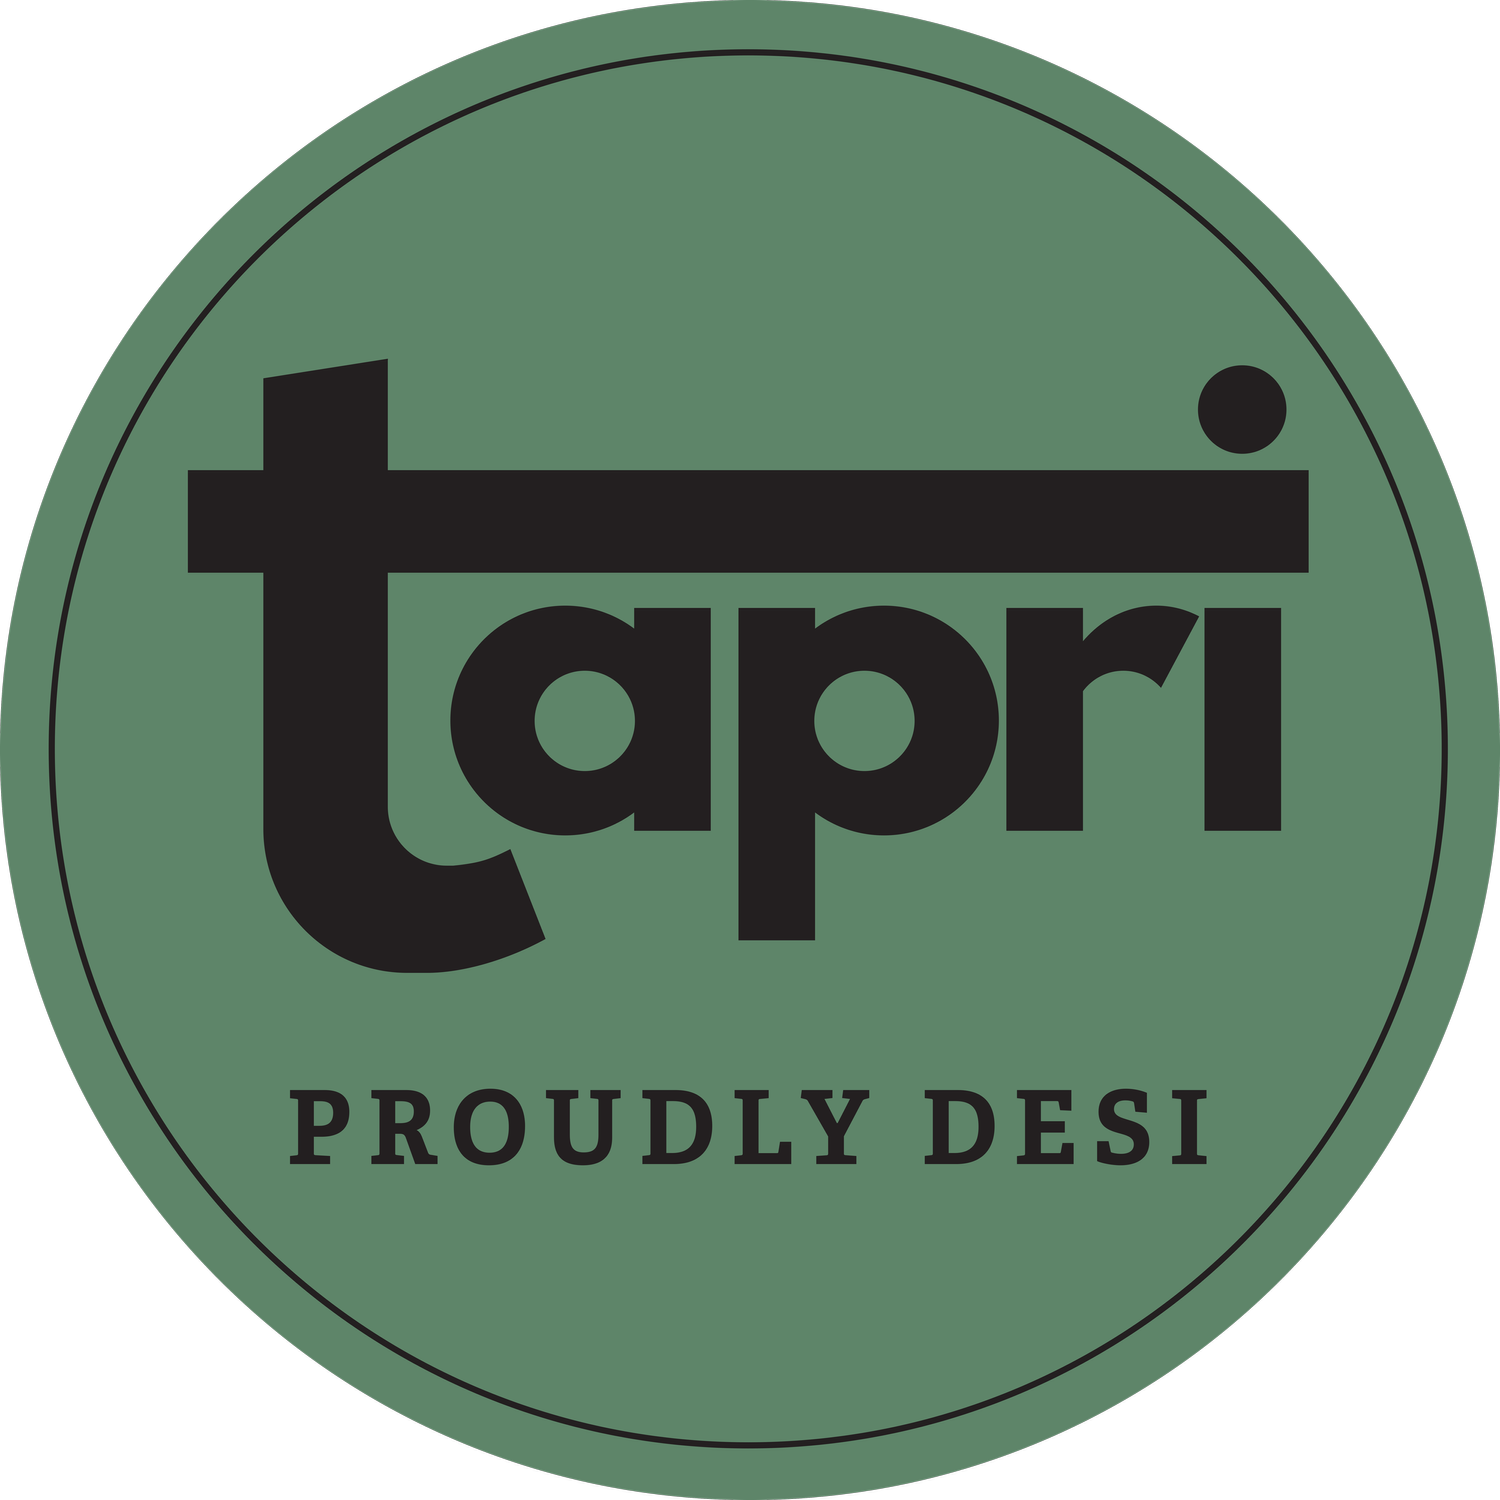 Tapri